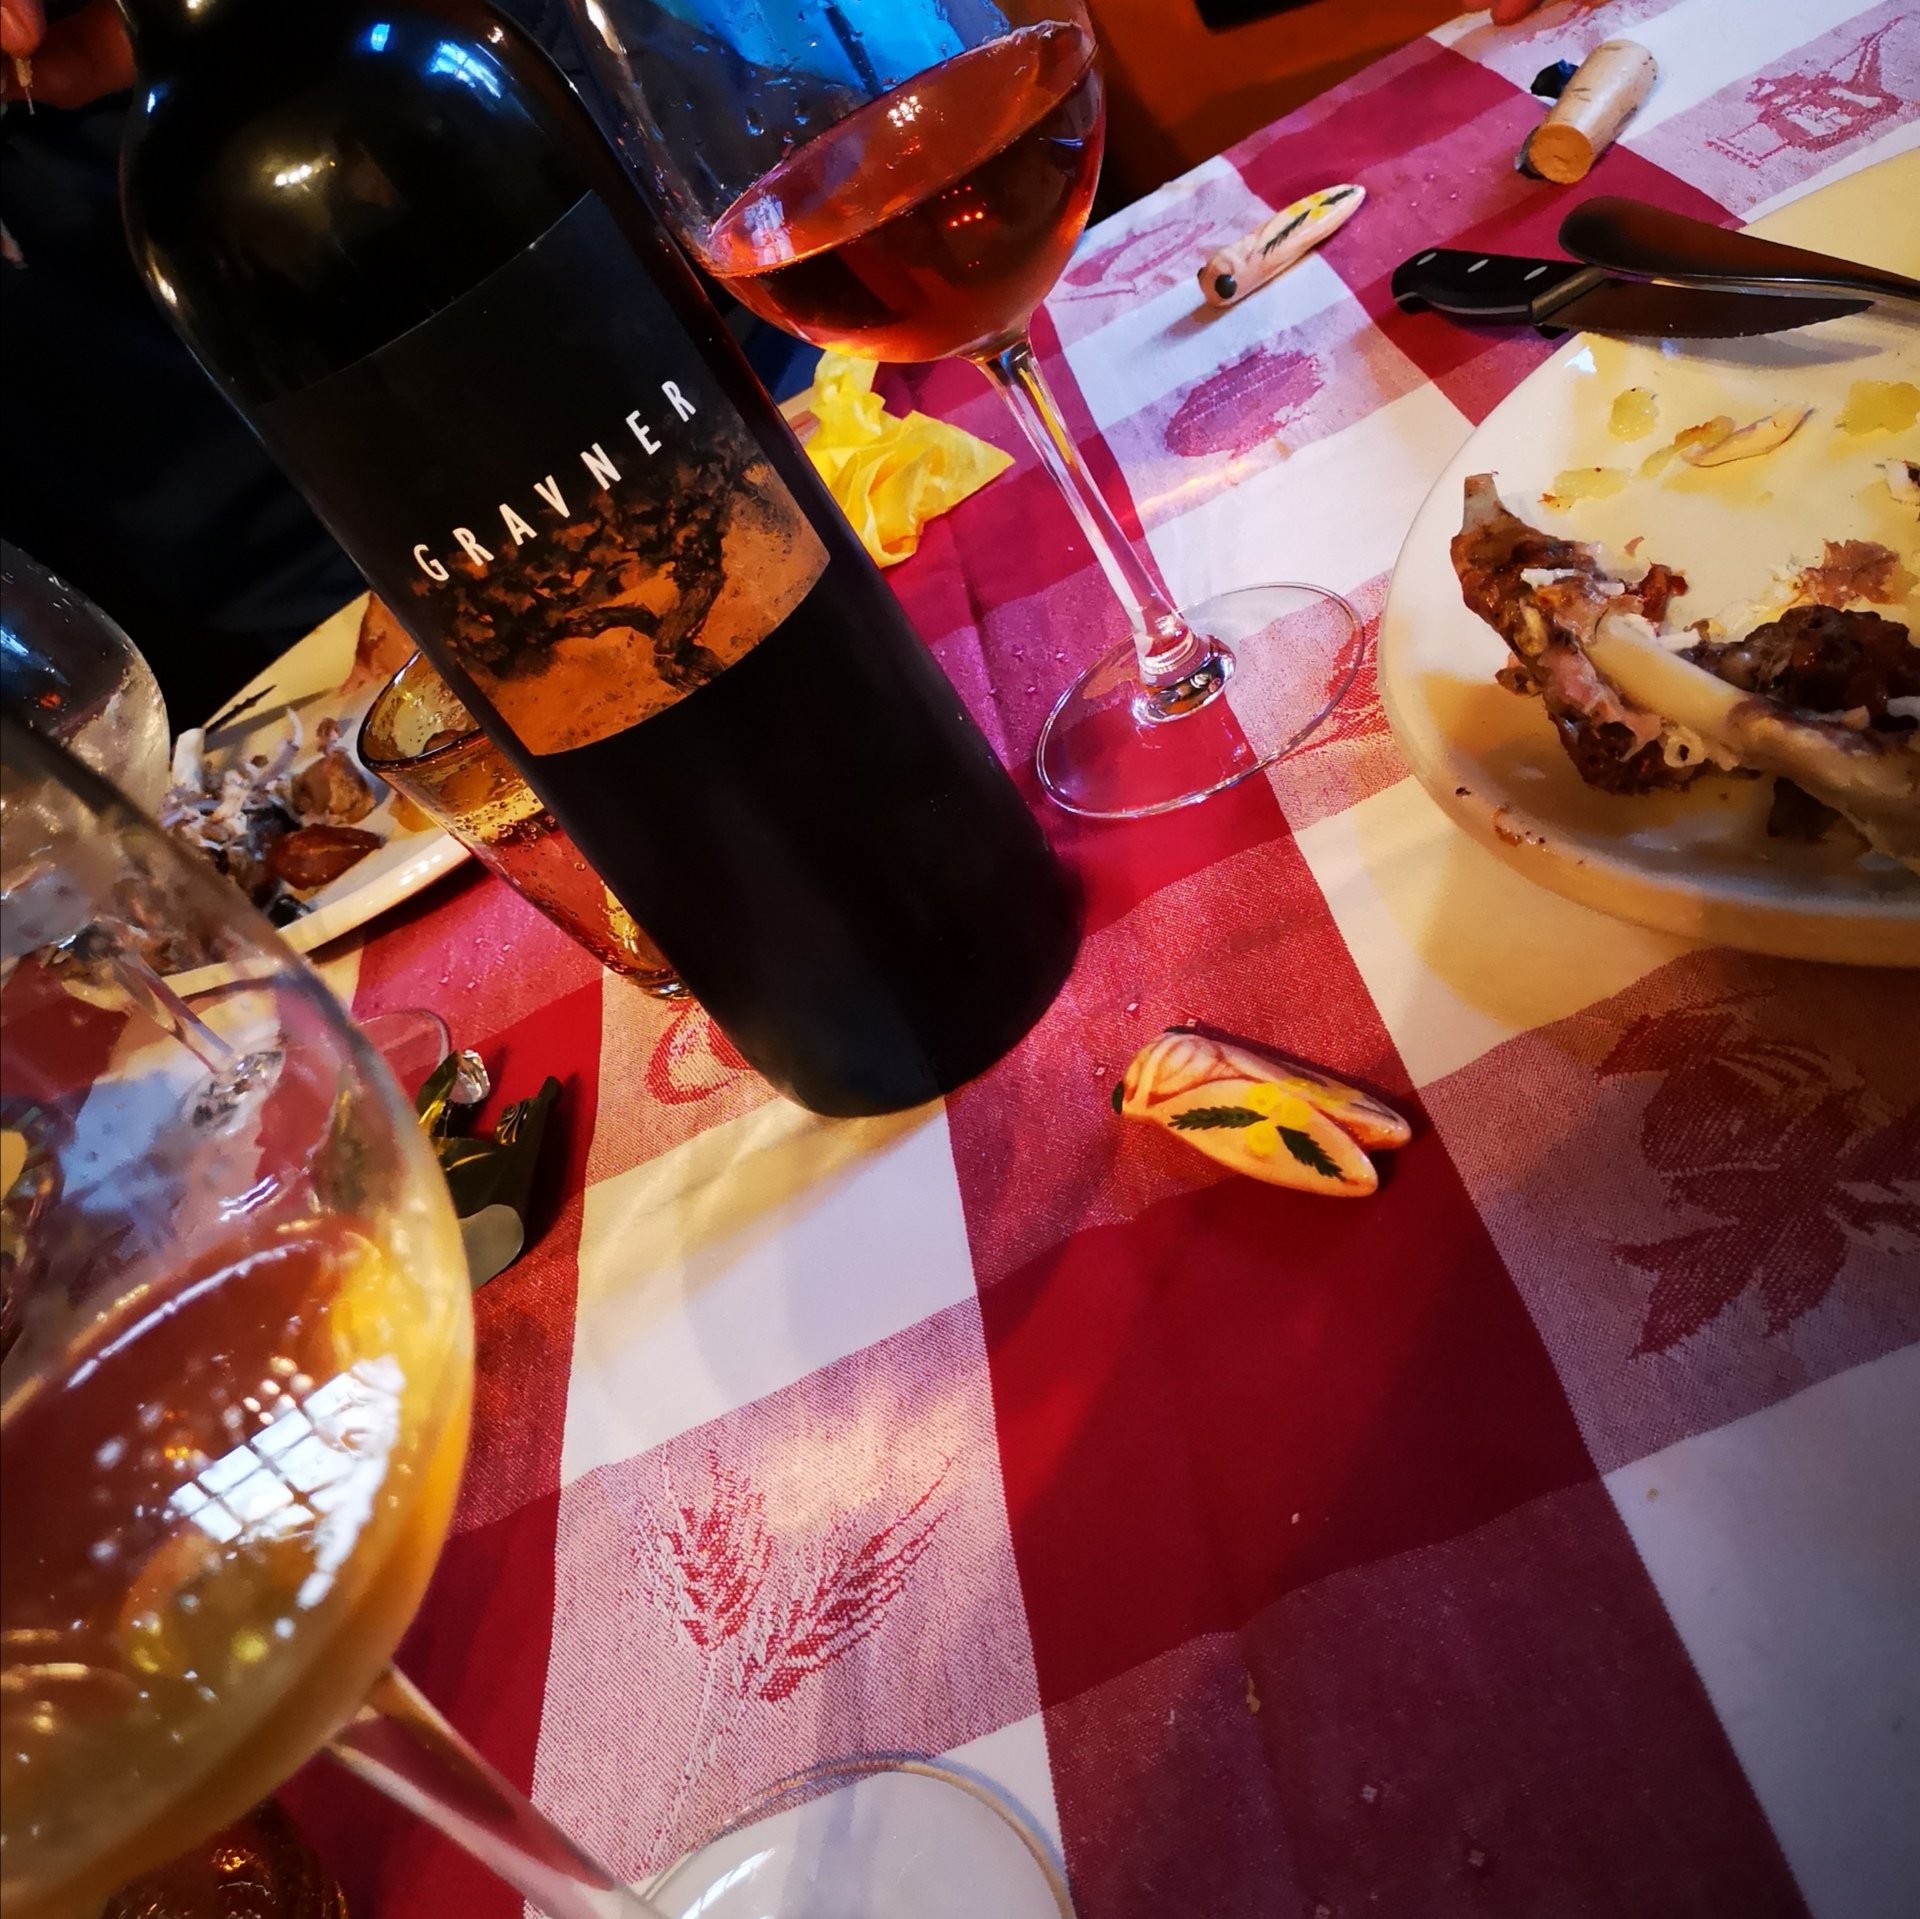 Enonauta/Degustazione di Vino #086 - review - Ribolla 2008 - Gravner | cangiante, multiforme, sapido, tannico